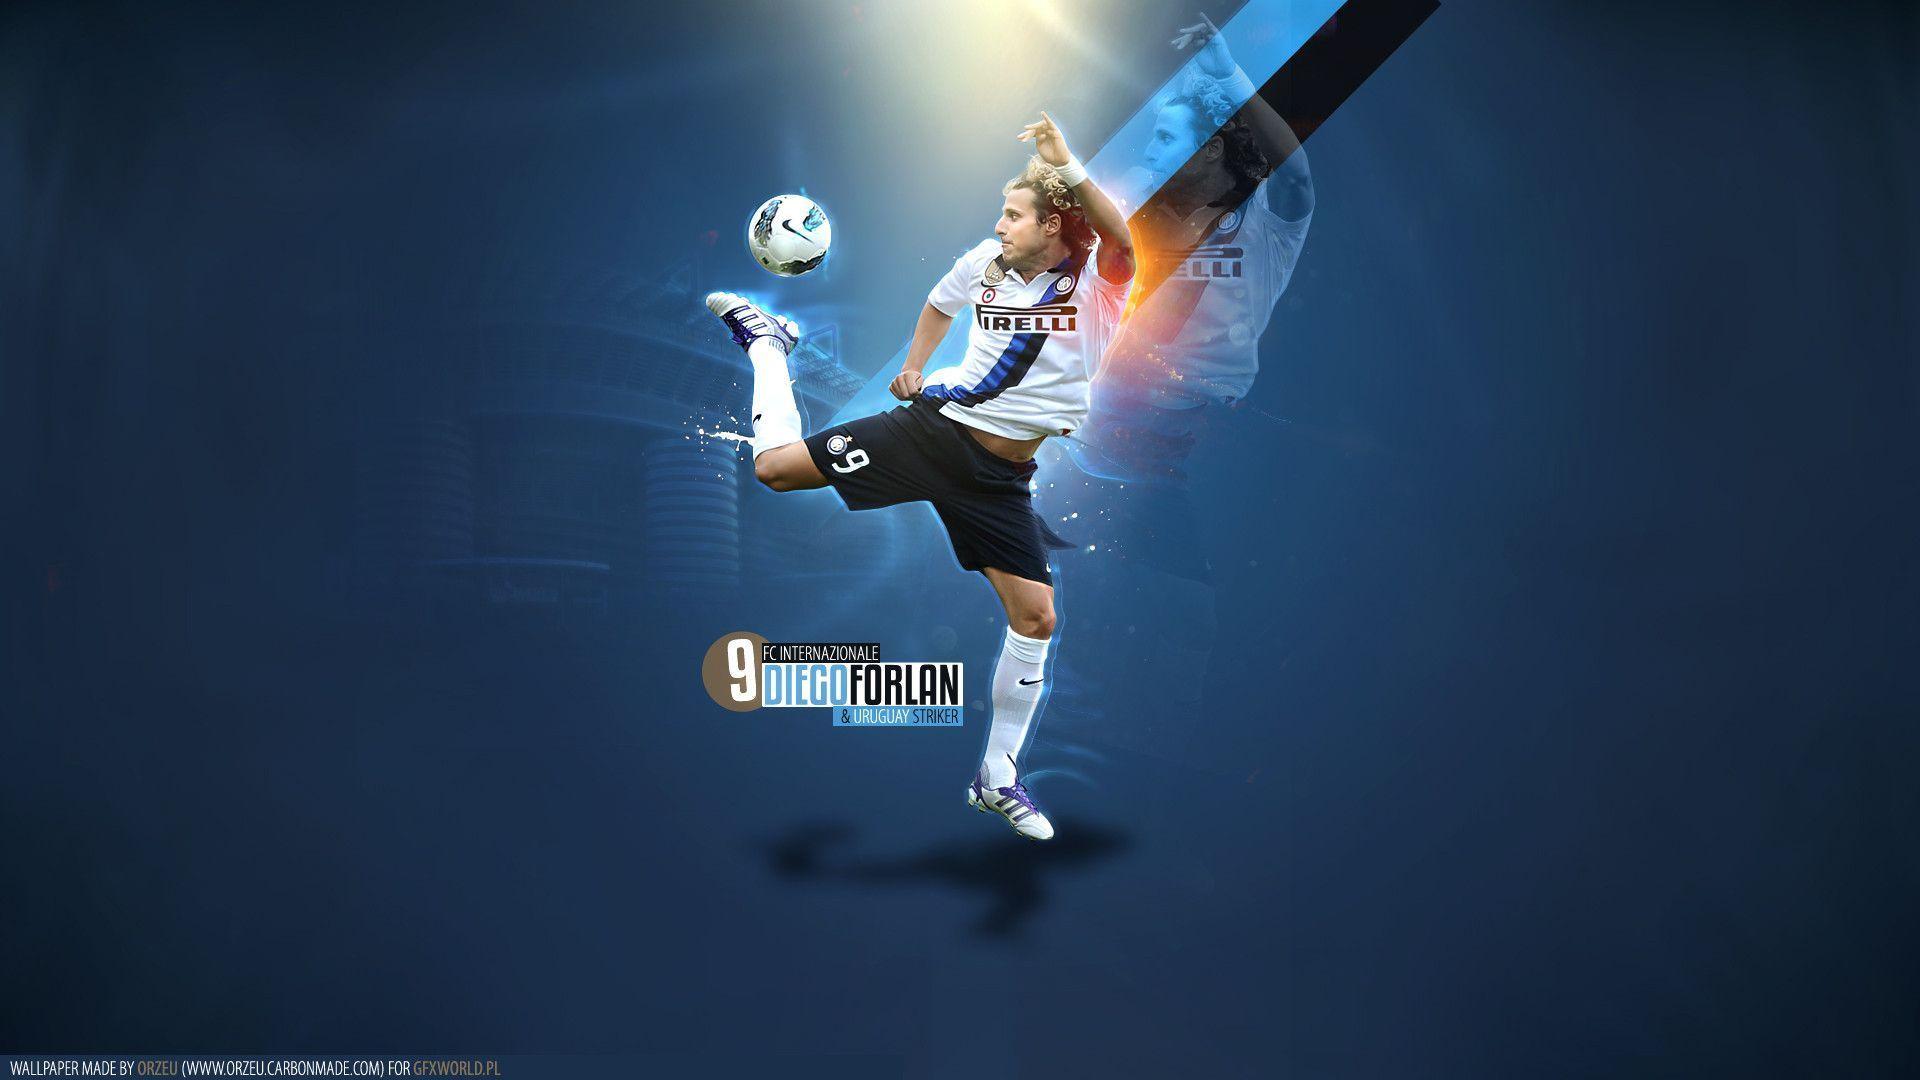 Diego Forlan Inter Milan HD Wallpaper